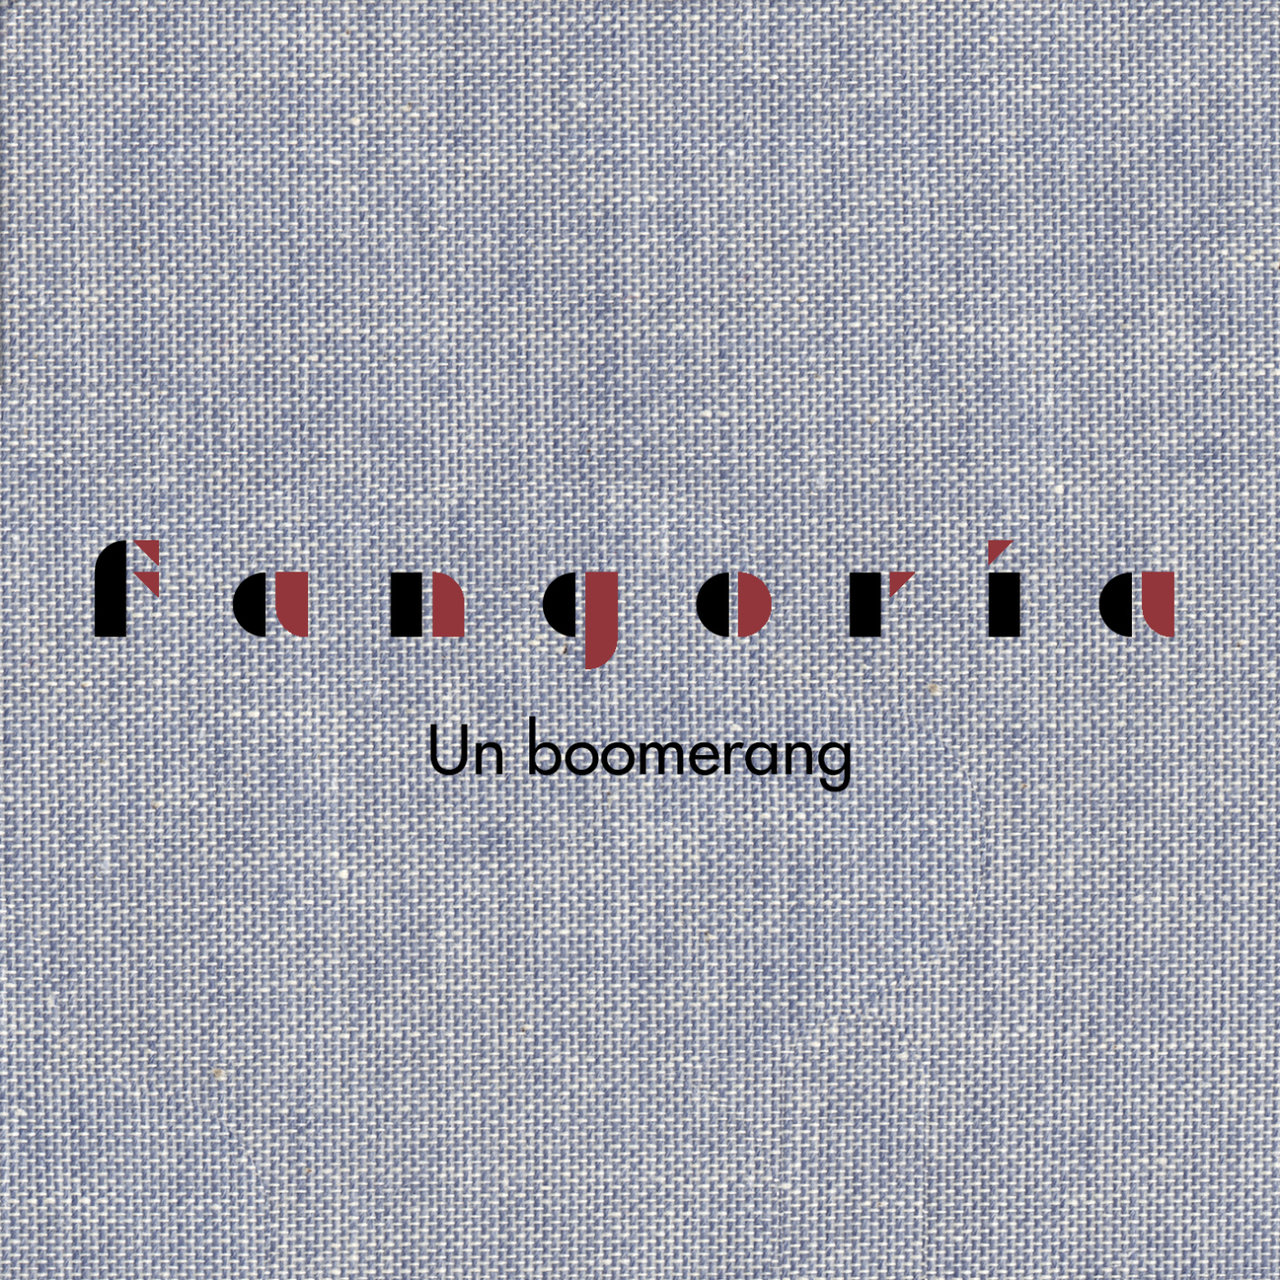 Fangoria — Un boomerang cover artwork